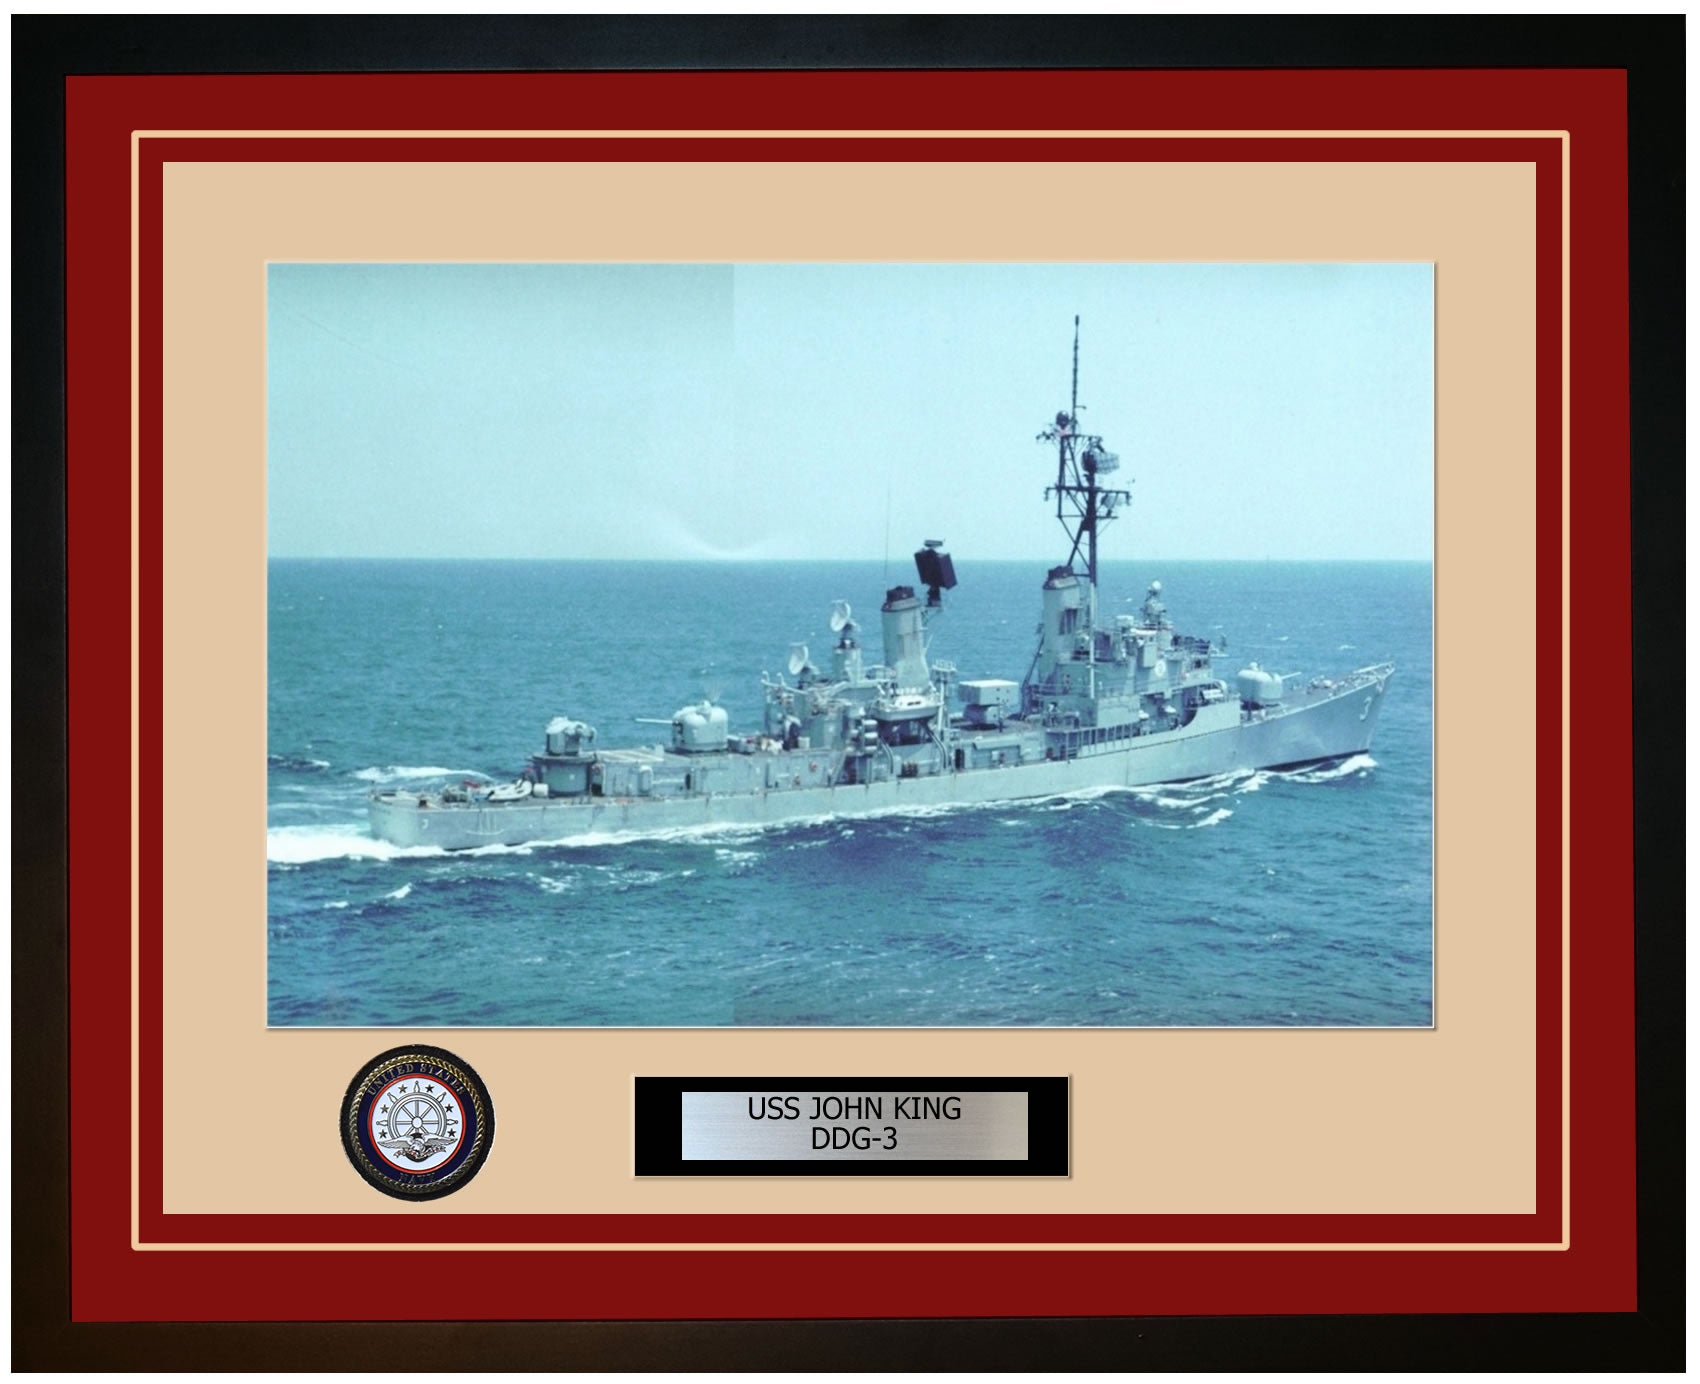 USS JOHN KING DDG-3 Framed Navy Ship Photo Burgundy